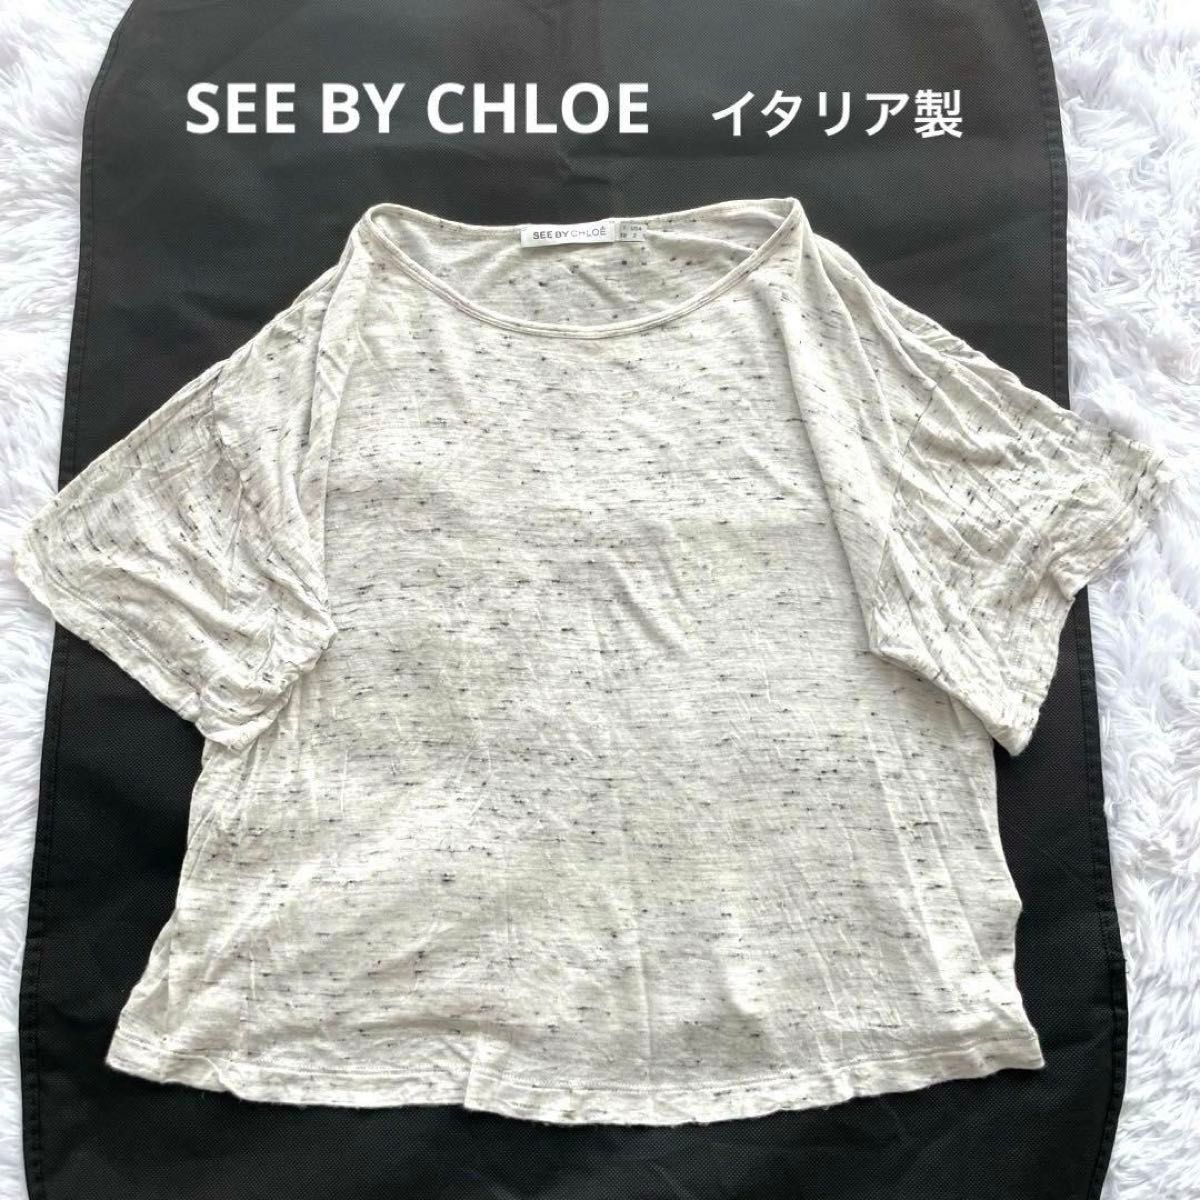 SEE BY CHLOE トップス 半袖 イタリア製 白 グレー プルオーバー カットソー Tシャツ